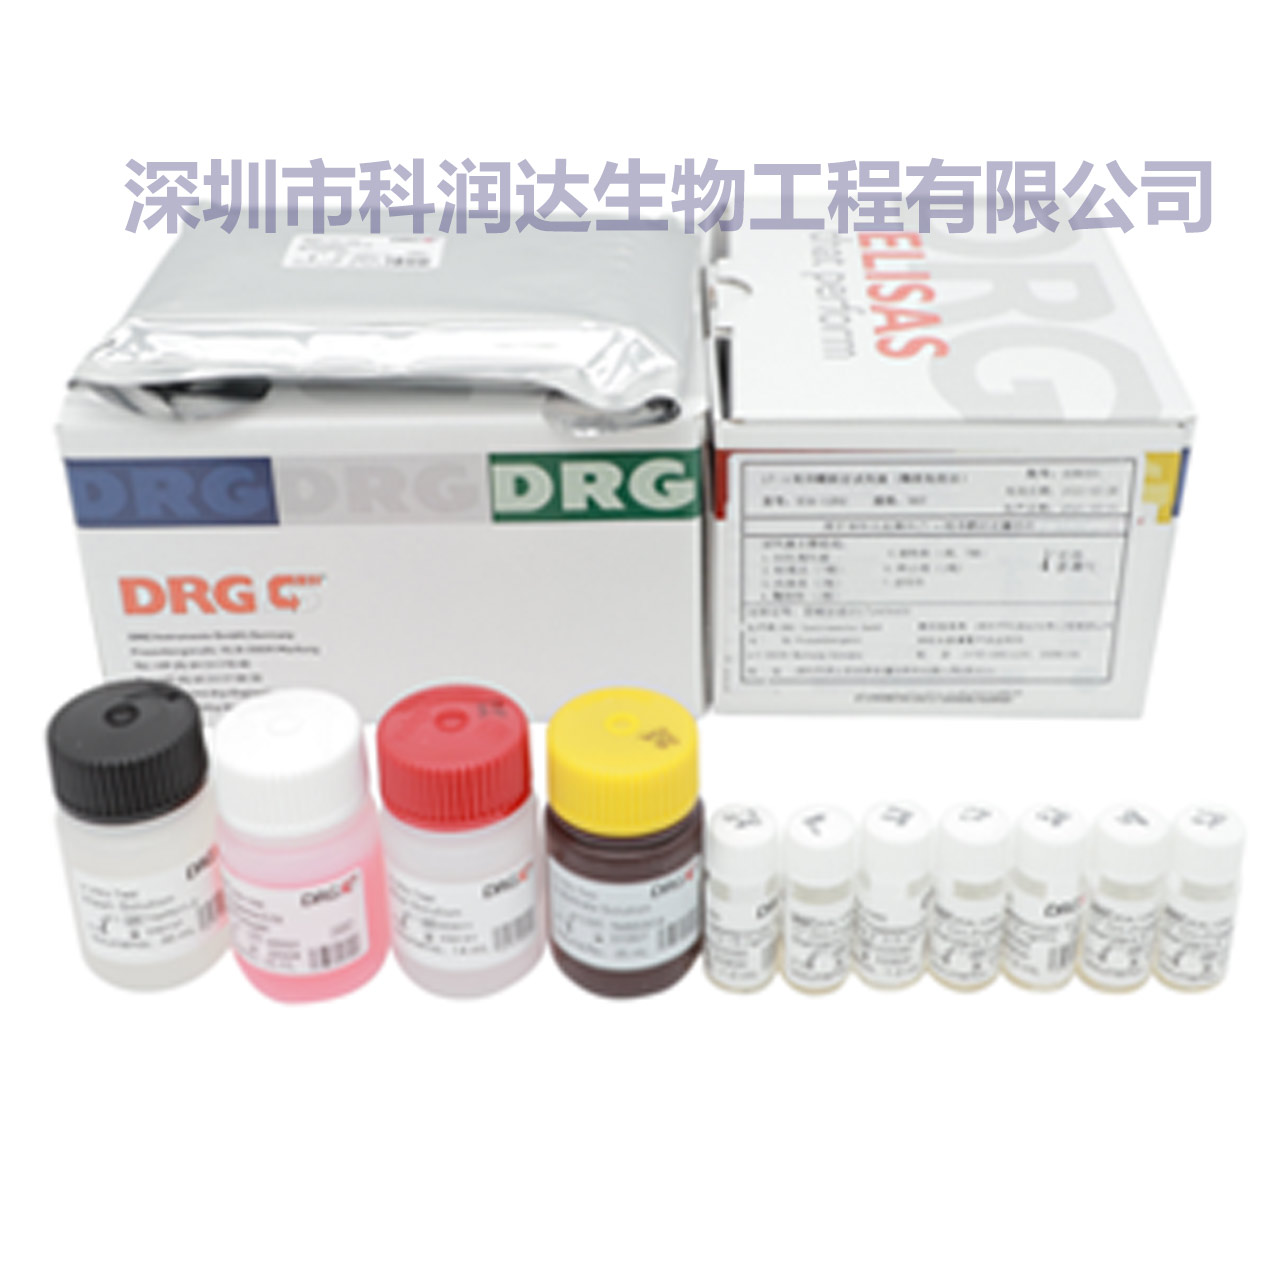 DRG试剂盒,带水印